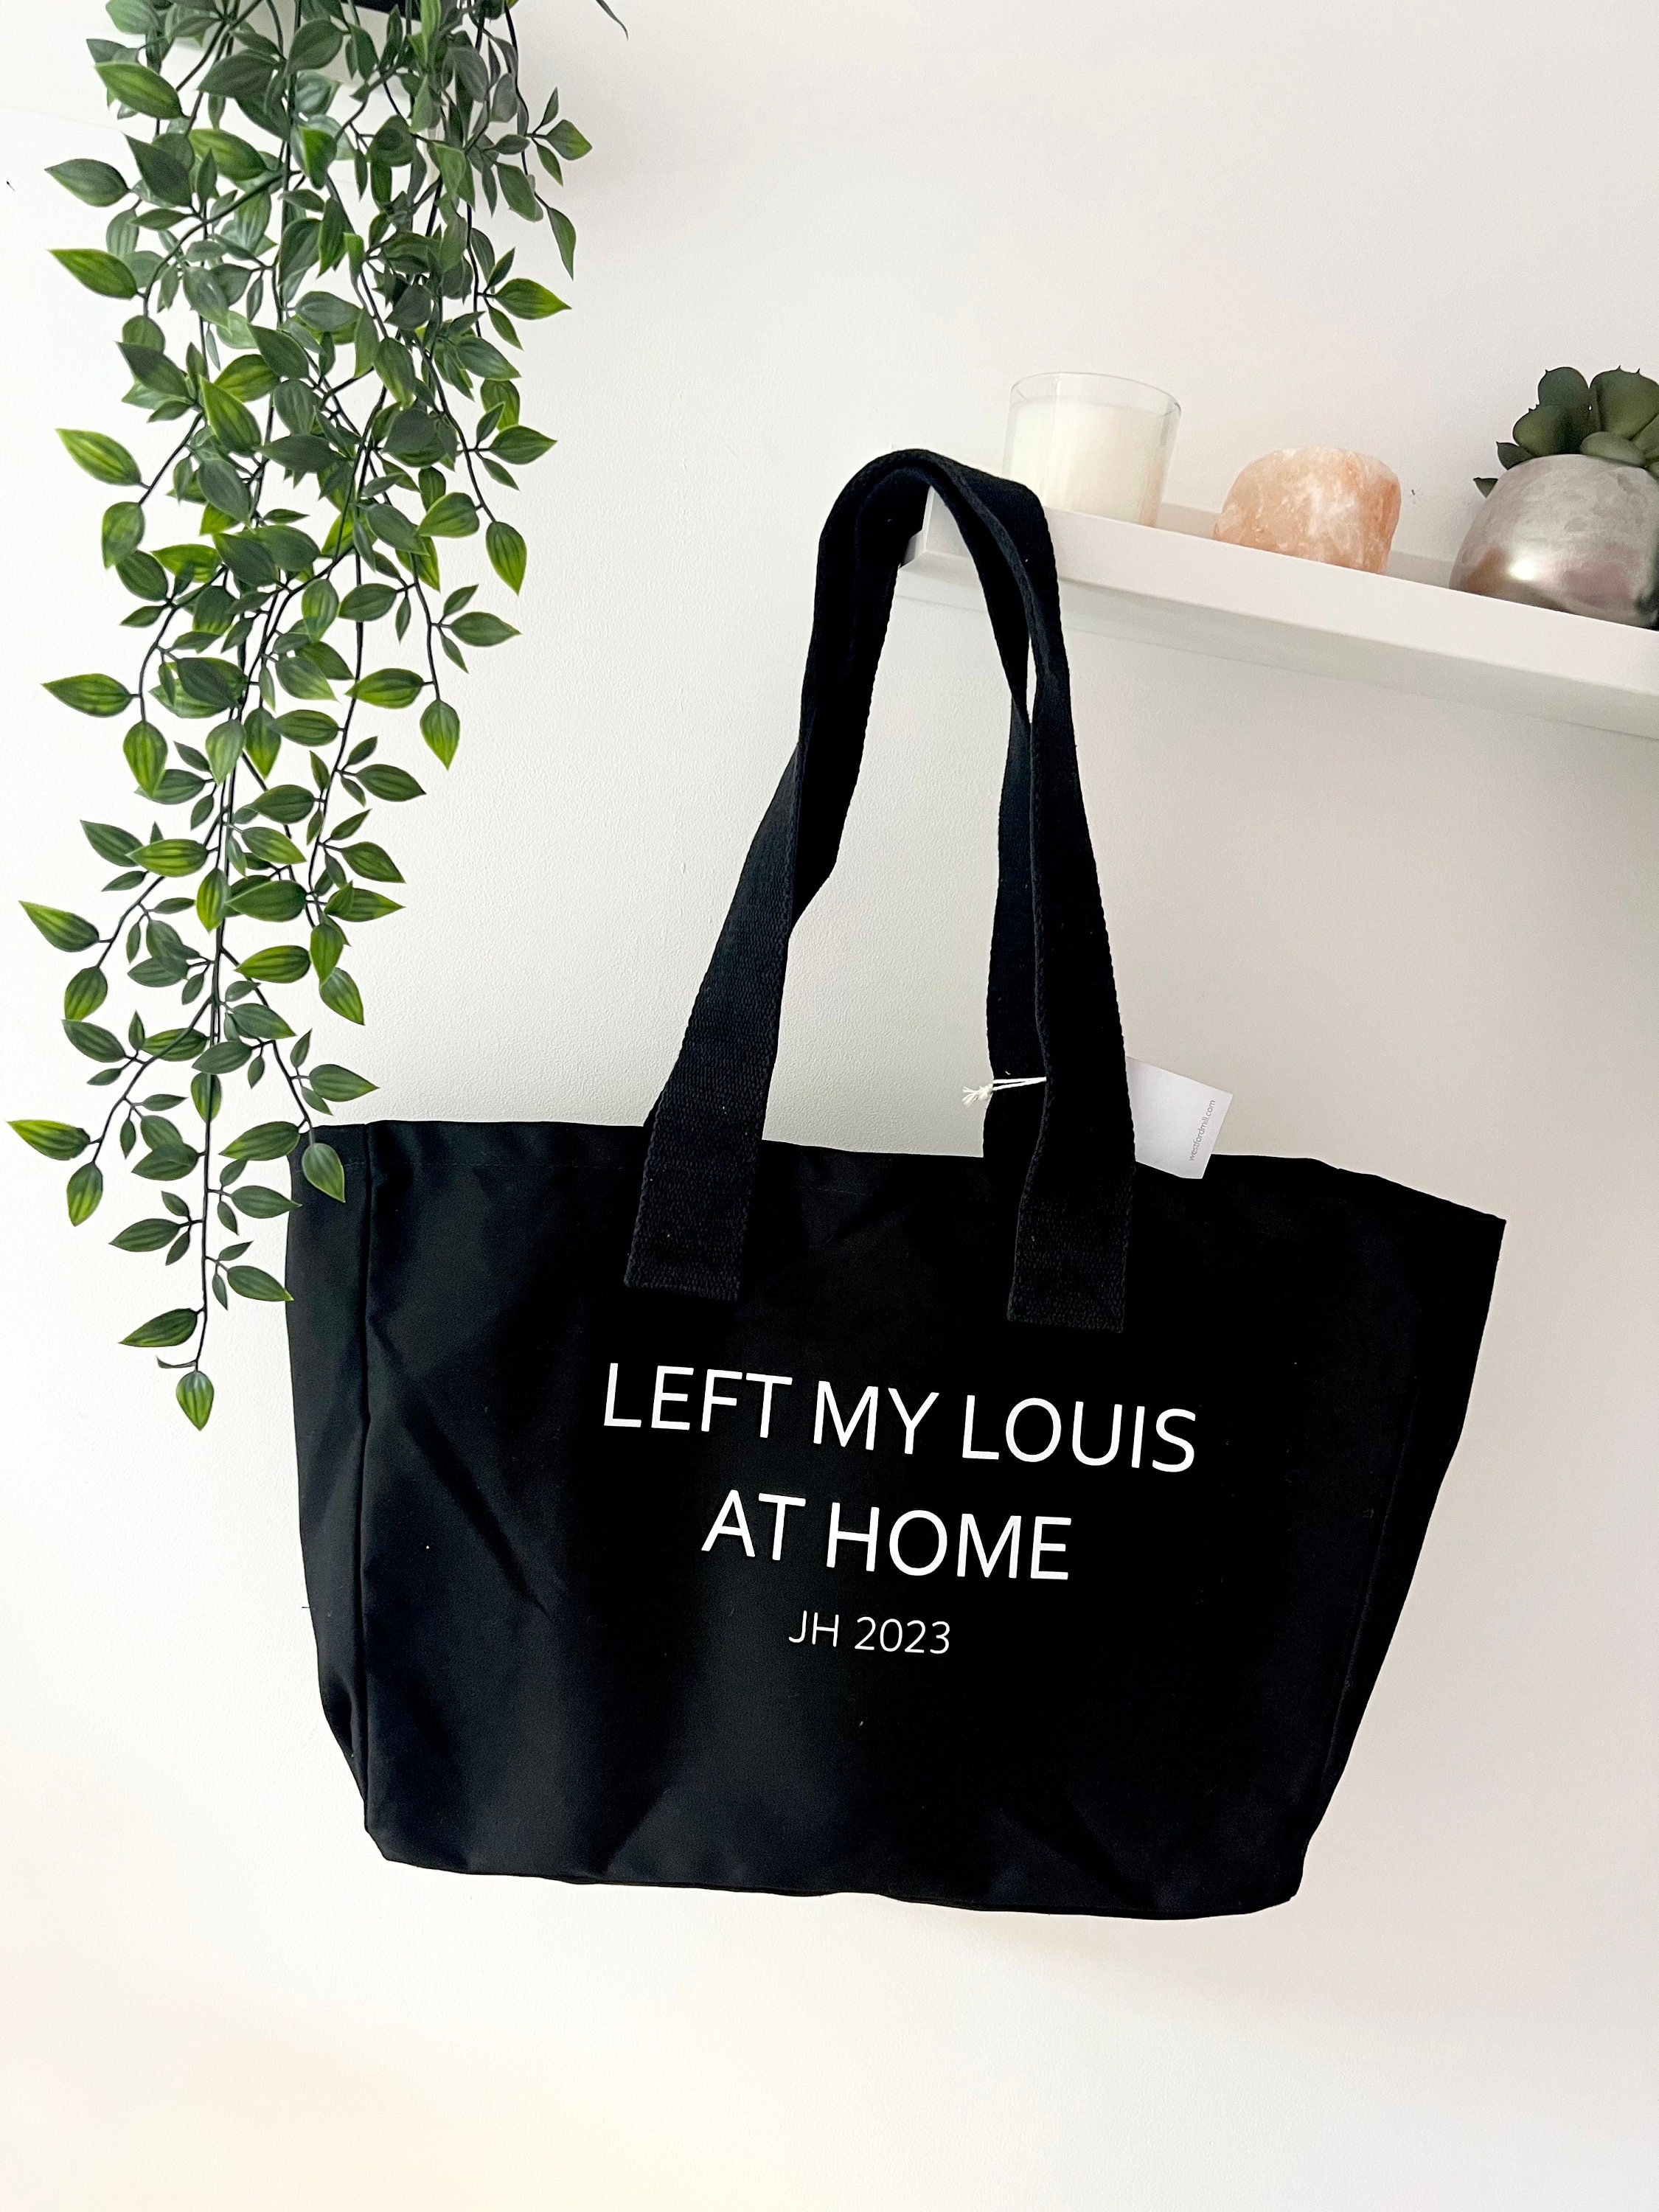 Left My Louis at Home Bag Canvas Shopper Large Black 